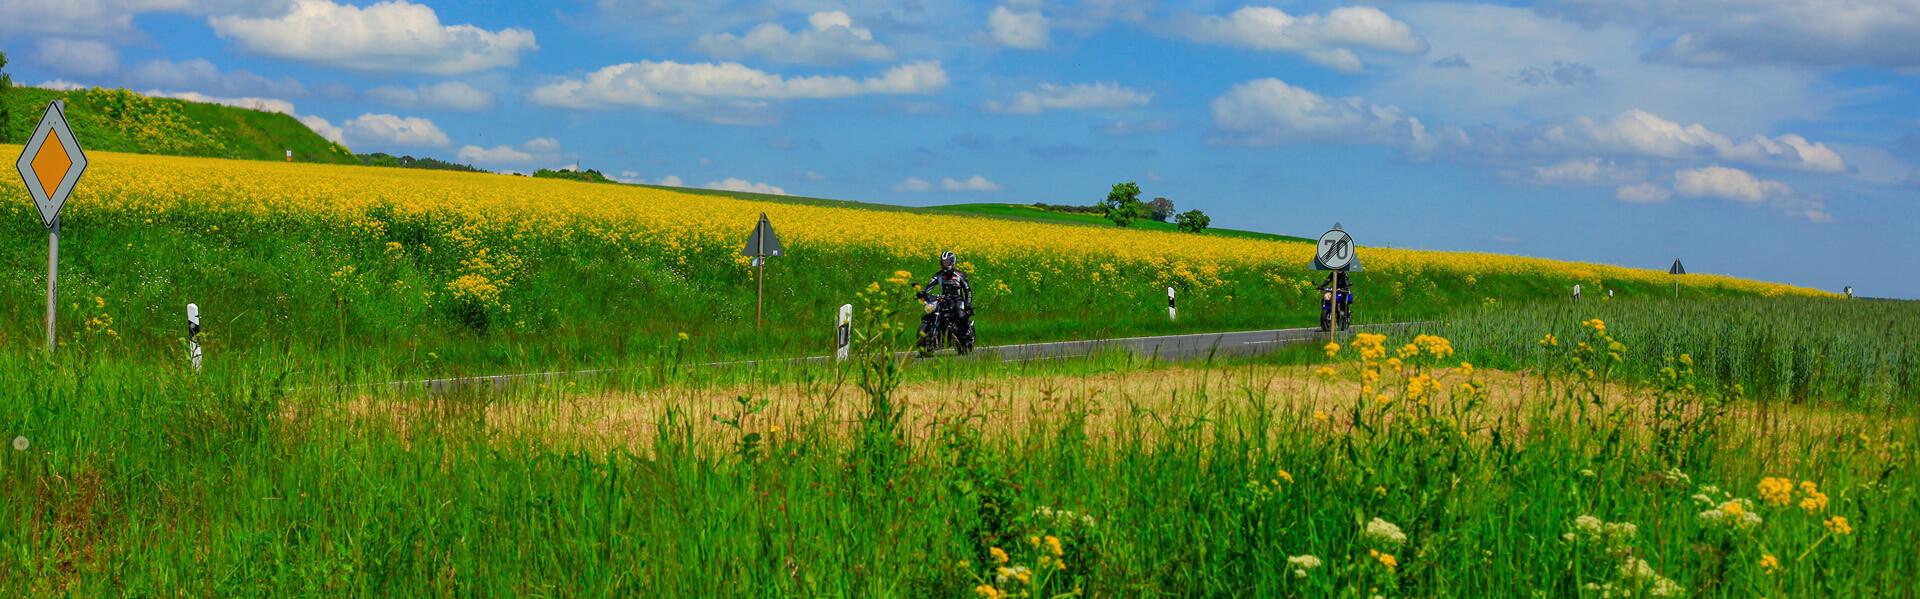 Eine Gruppe von Motorradfahrern machen einen Ausflug auf einer Landstraße zwischen Feldern.